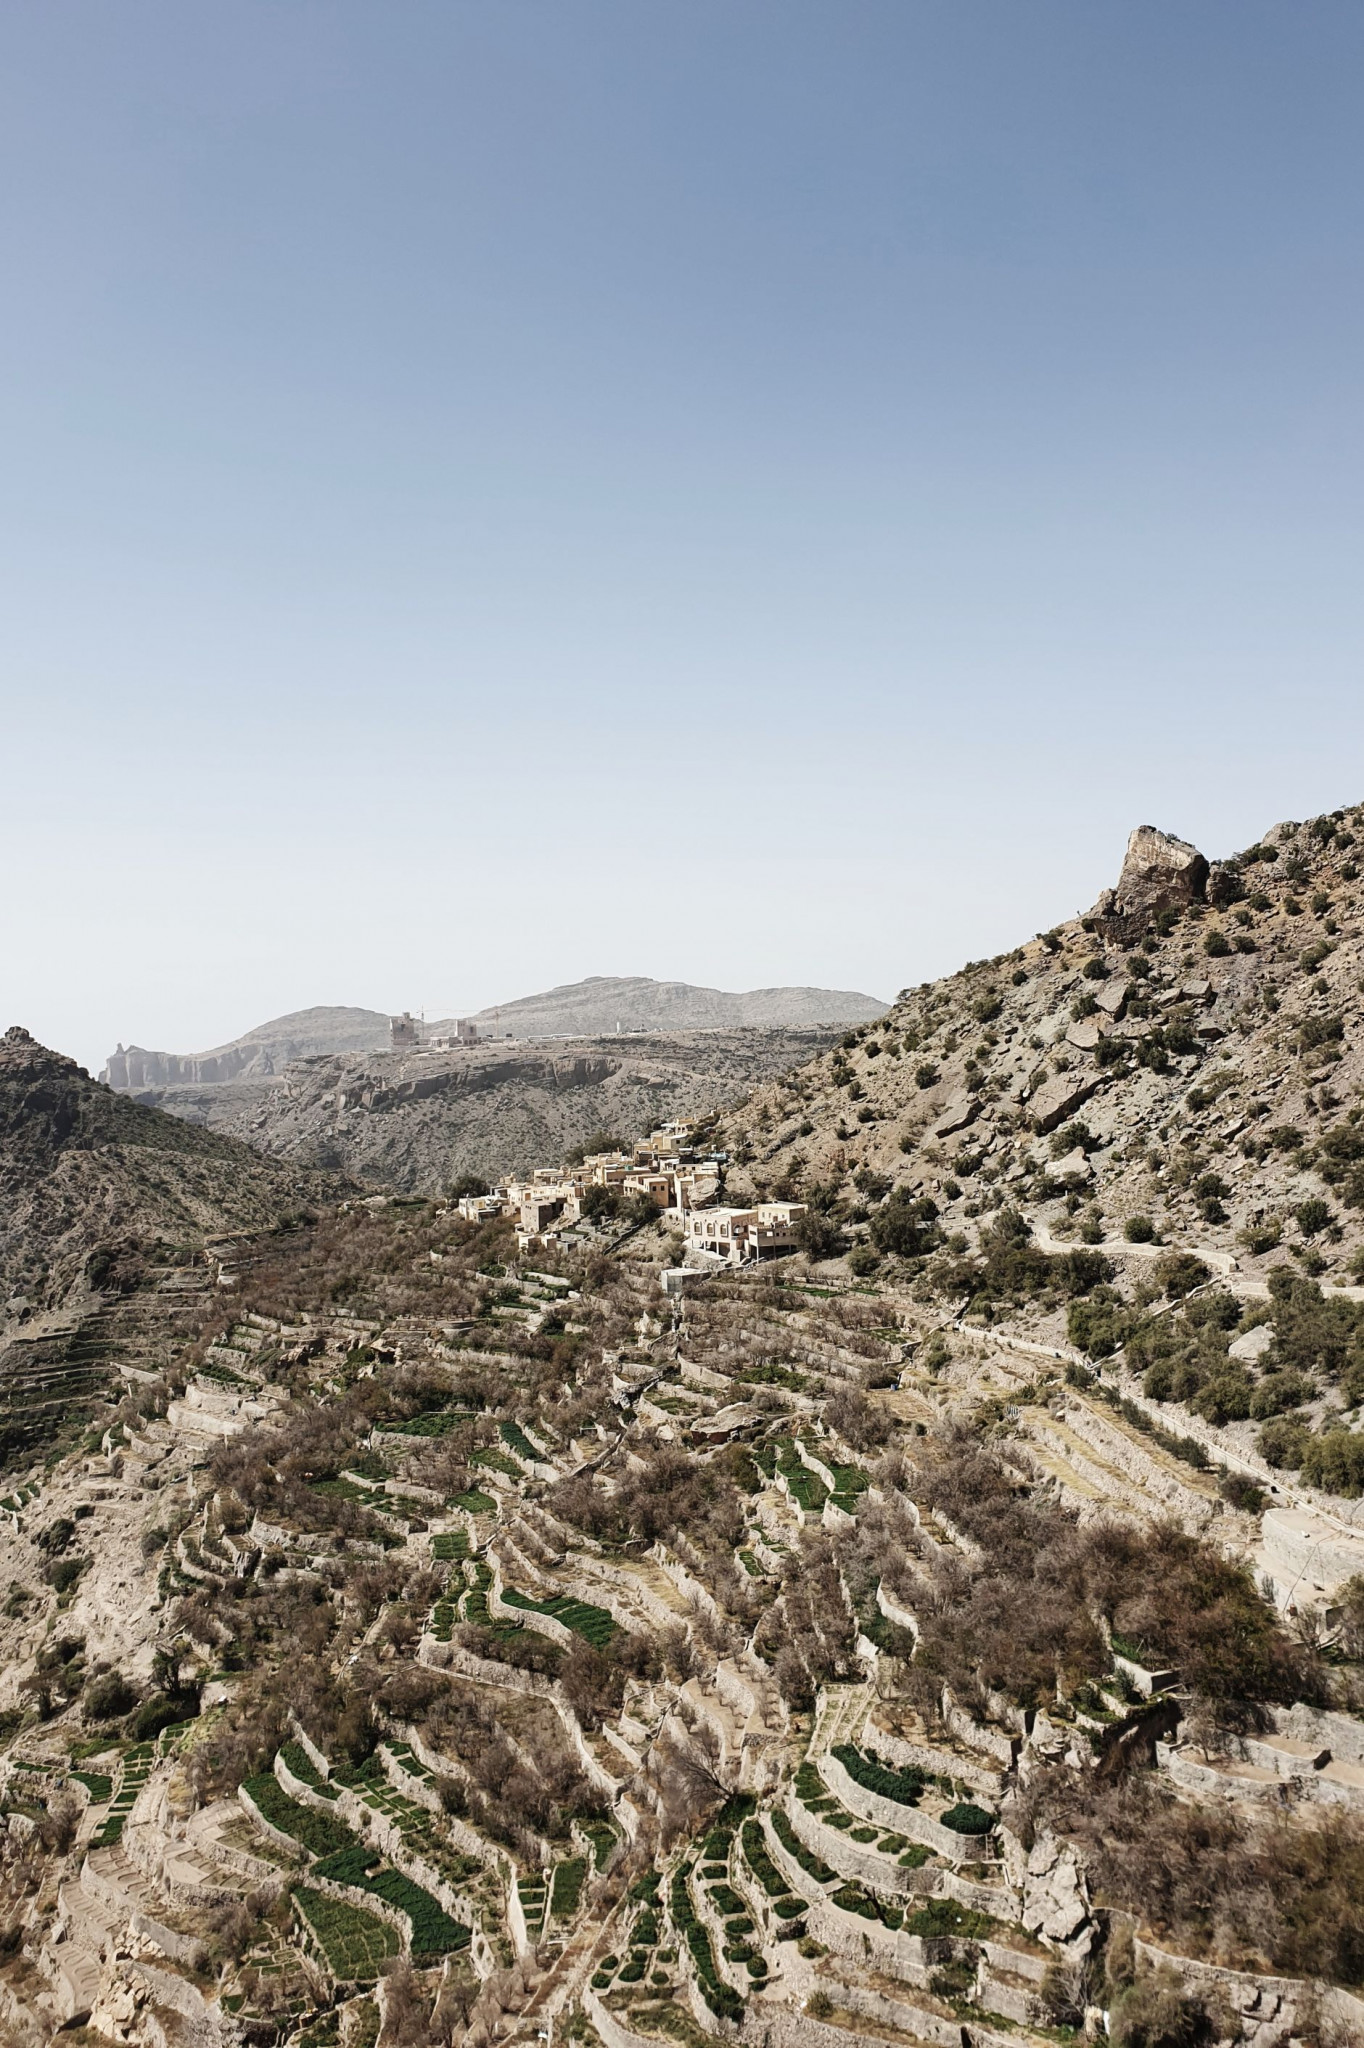 Carnet de voyage : Oman, trésor caché d’Orient